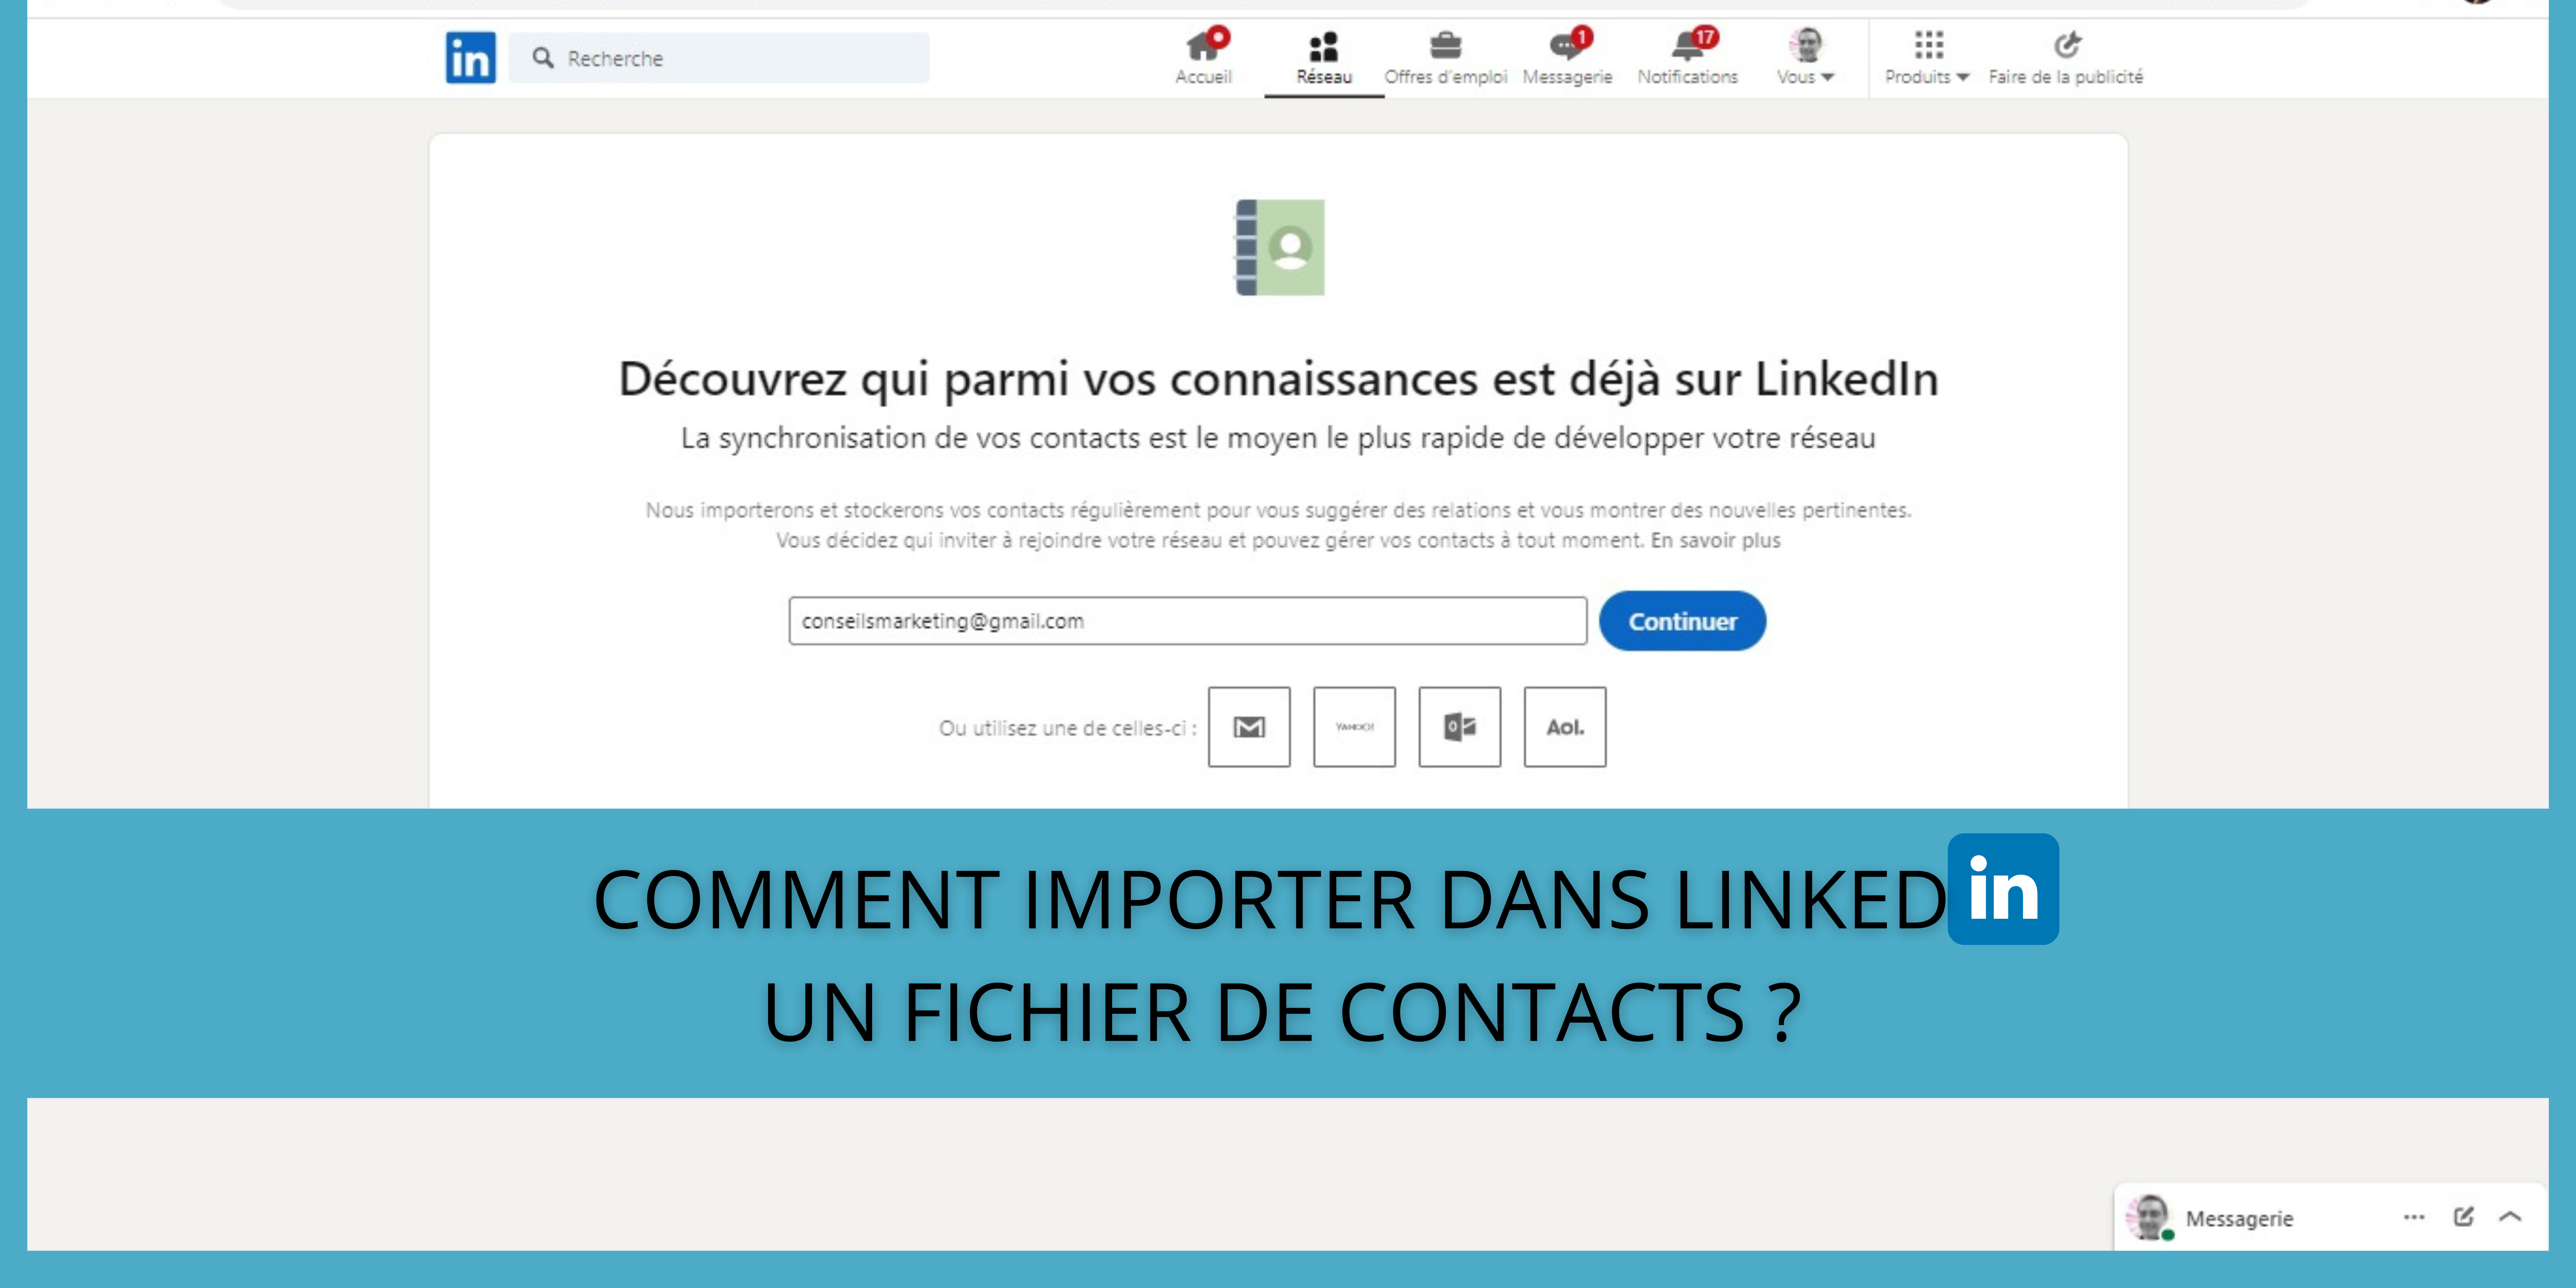 Comment importer dans LinkedIn un fichier de contacts ? 322